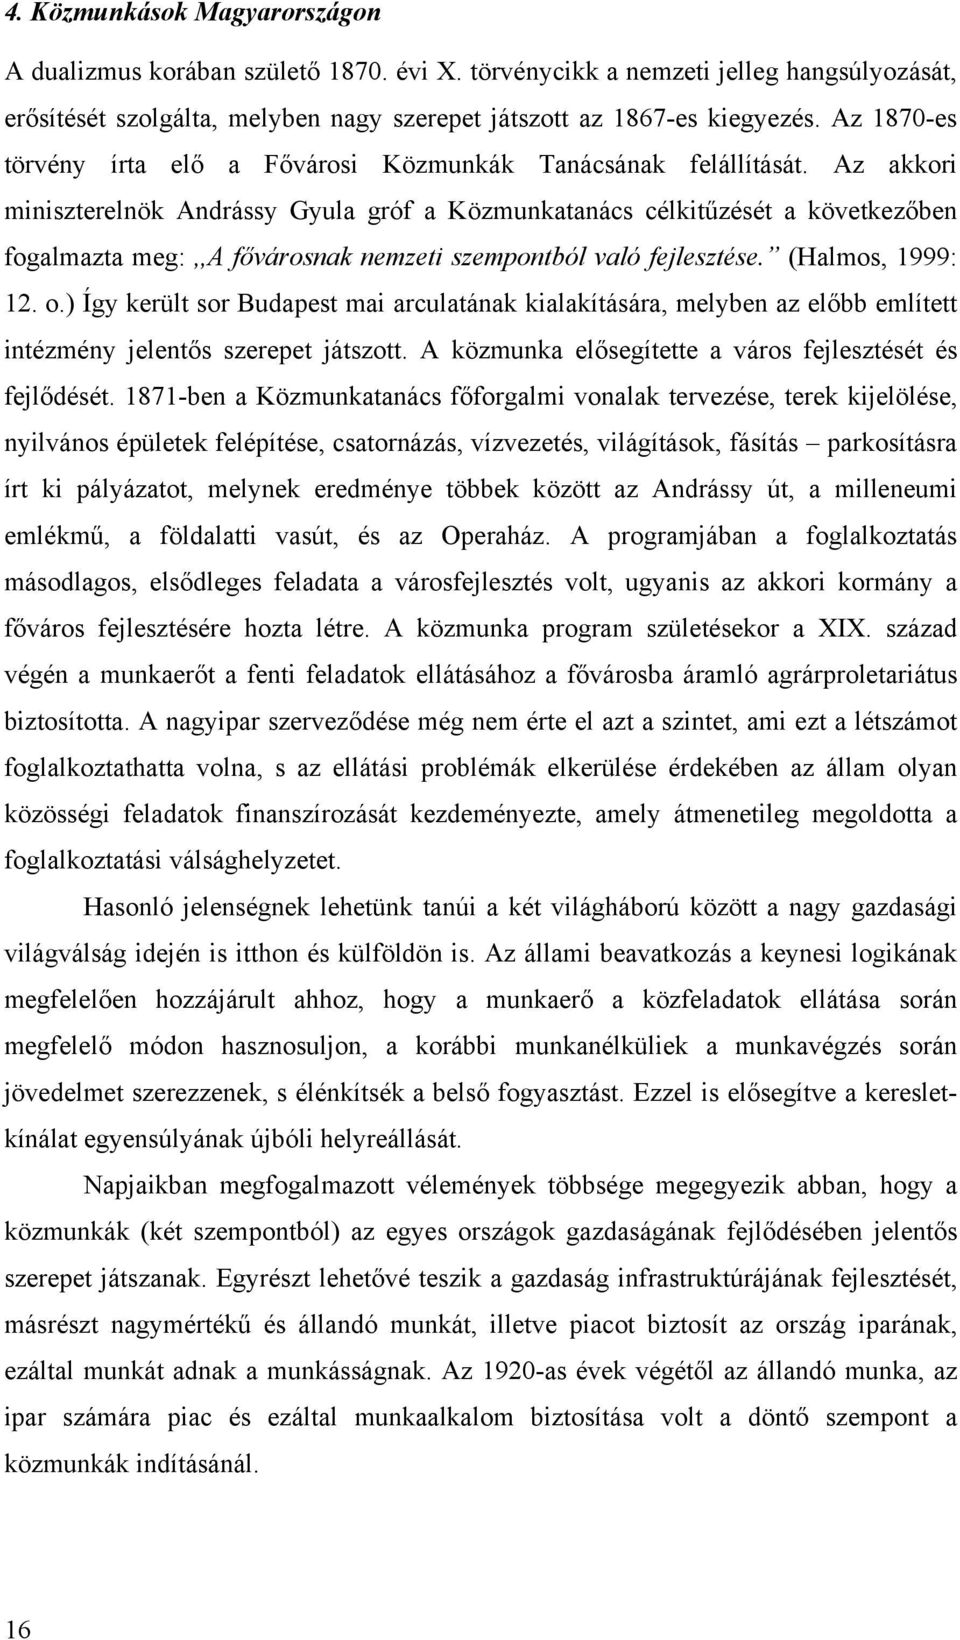 Az akkori miniszterelnök Andrássy Gyula gróf a Közmunkatanács célkitűzését a következőben fogalmazta meg:,,a fővárosnak nemzeti szempontból való fejlesztése. (Halmos, 1999: 12. o.